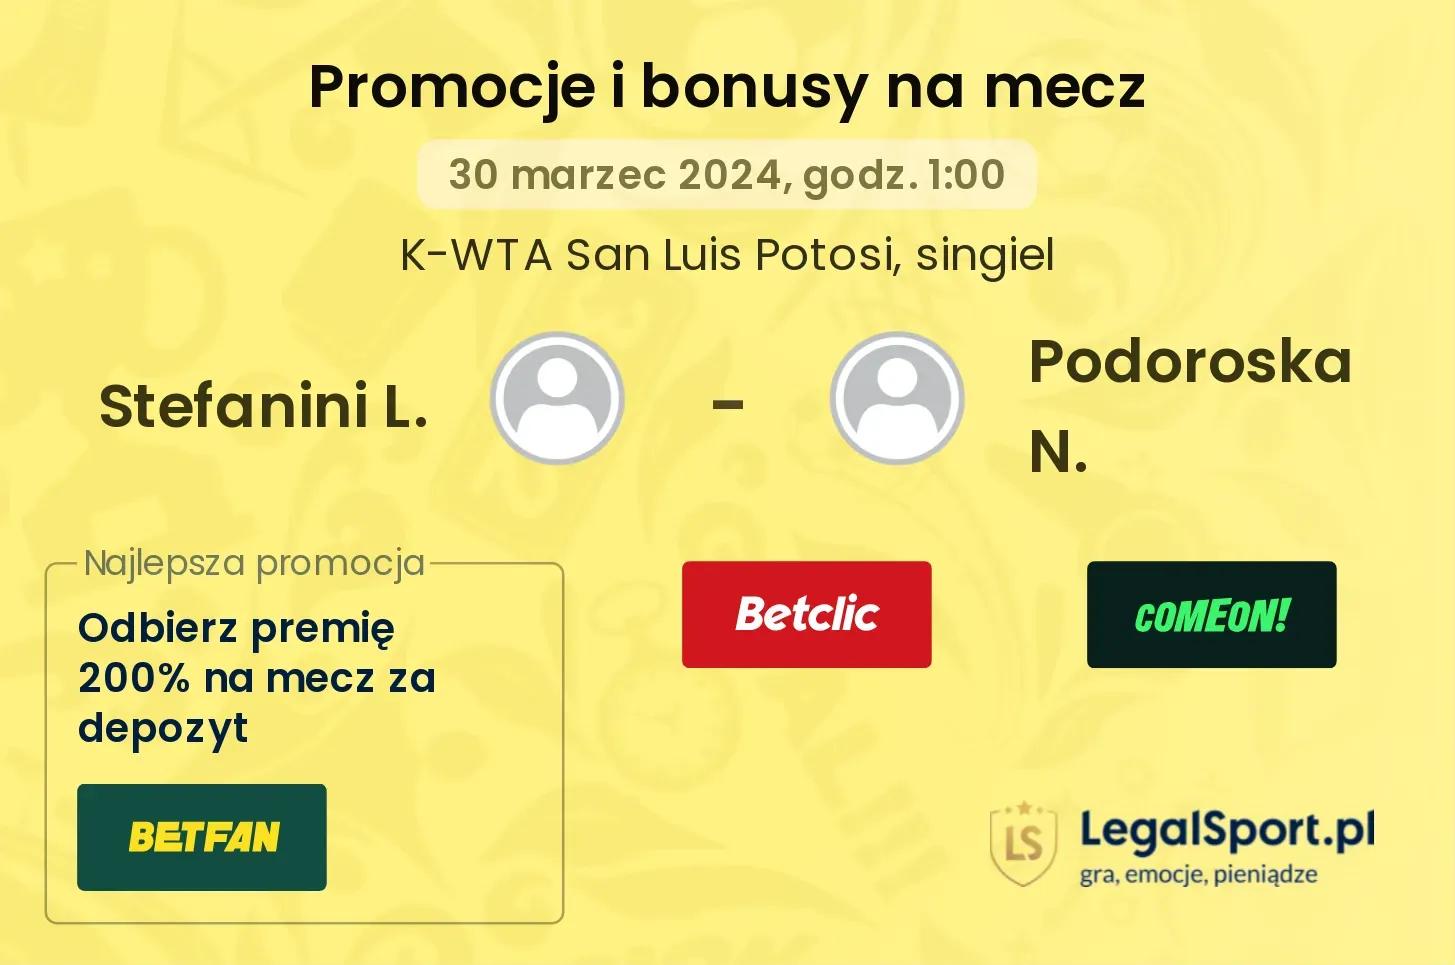 Stefanini L. - Podoroska N. promocje bonusy na mecz